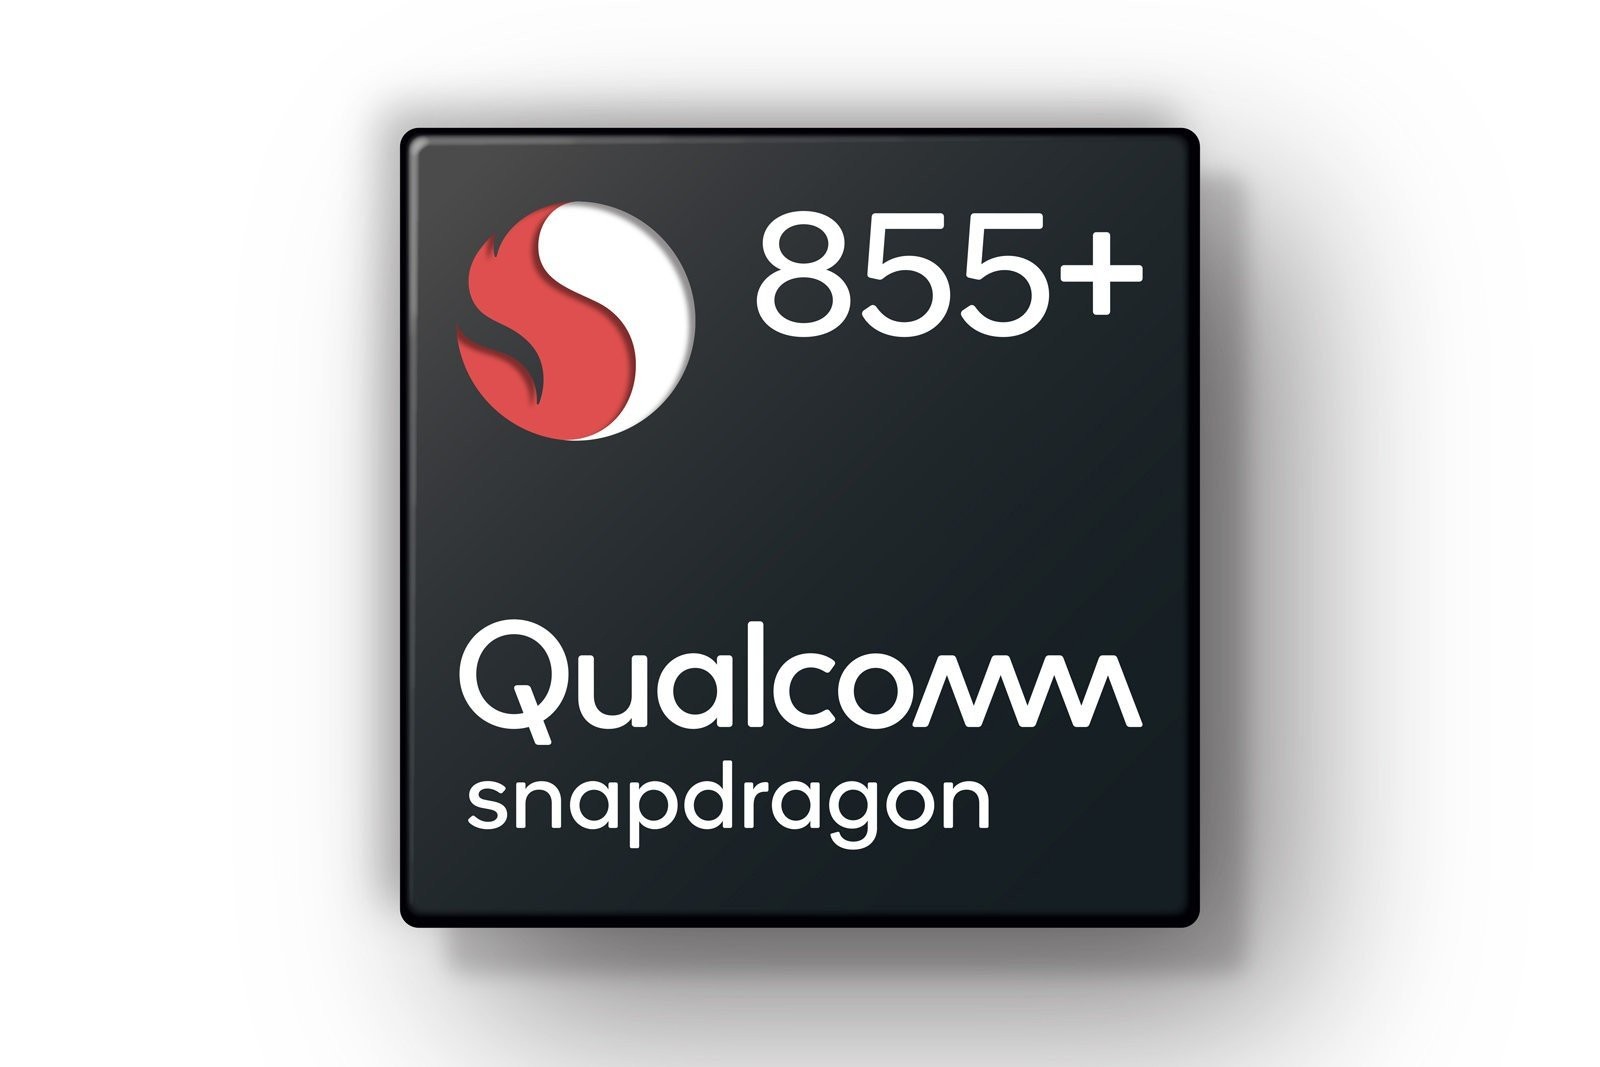 Qualcomm Snapdragon 855+: Βελτιωμένη έκδοση με έμφαση στο gaming